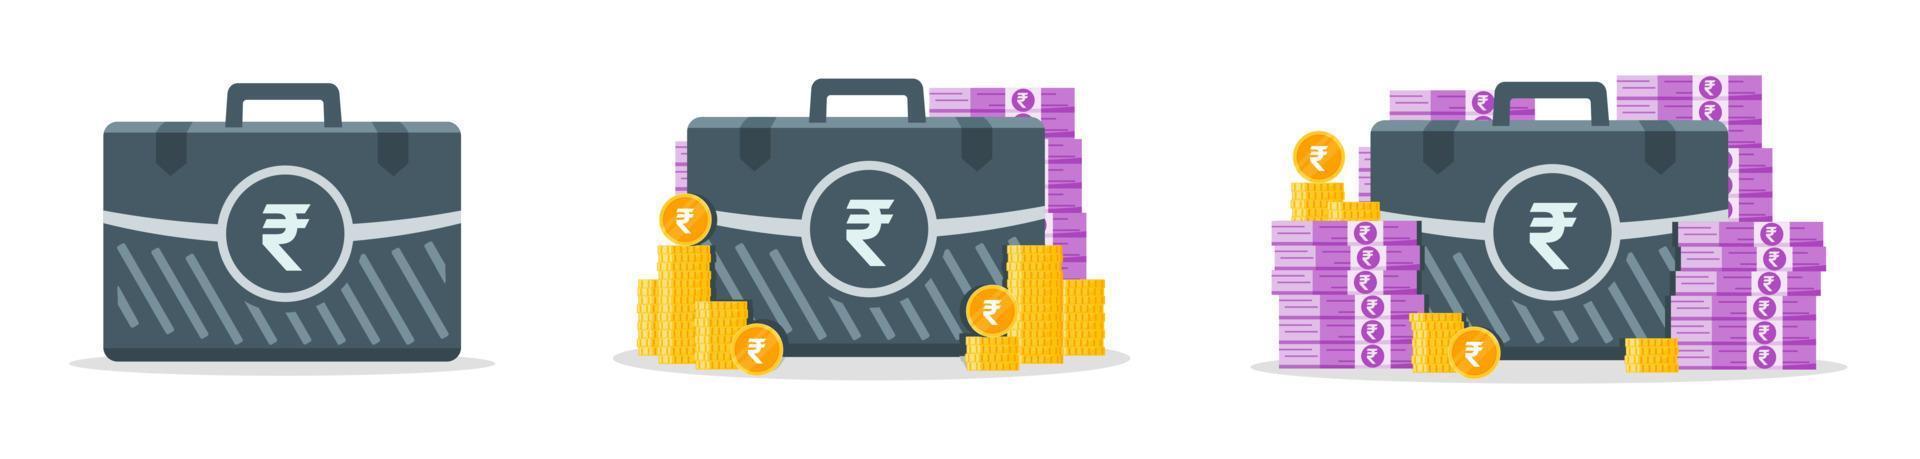 Symbole für indische Rupie-Geldkoffer vektor